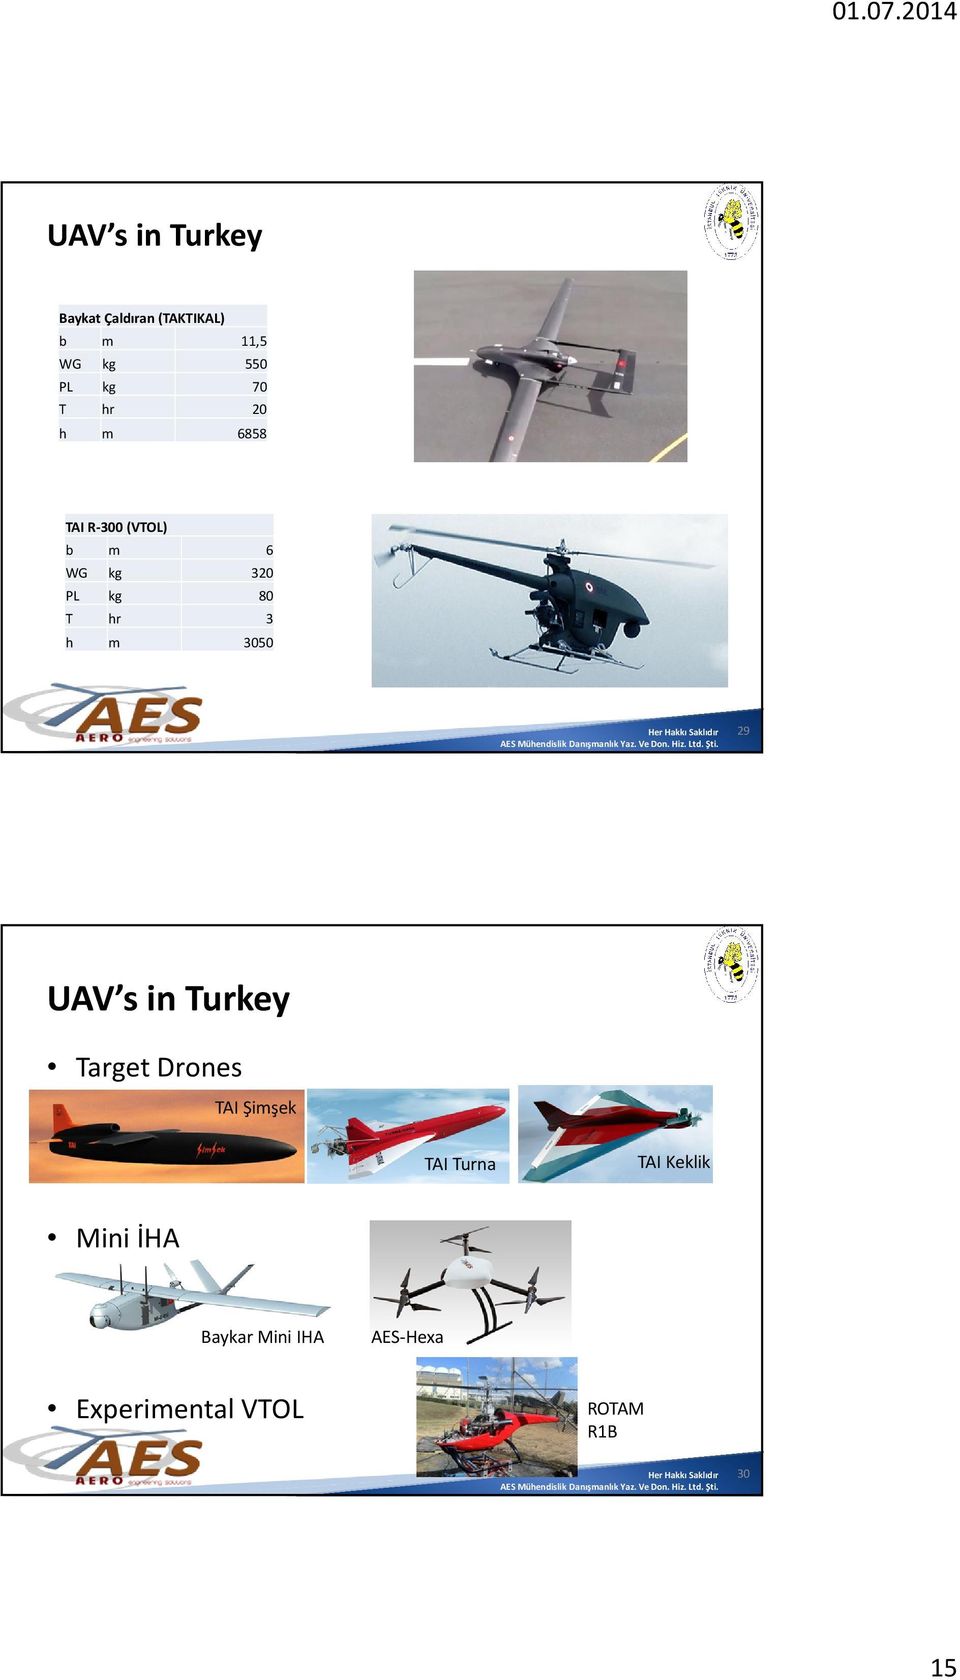 h m 3050 29 UAV s in Turkey Target Drones TAI Şimşek TAI Turna TAI